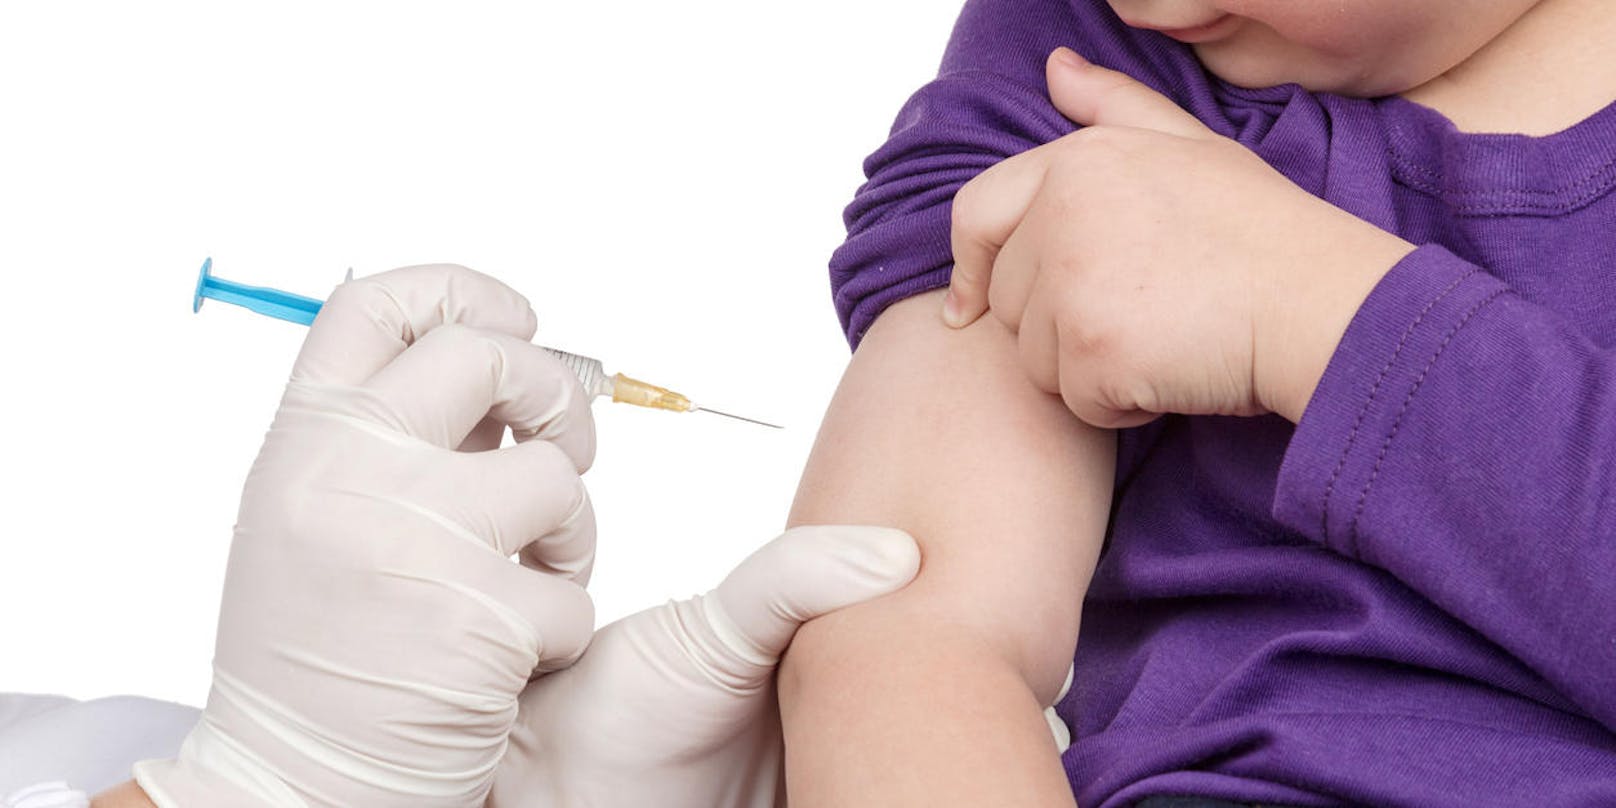 Um möglichst alle Menschen impfen zu können, sollten die Kassen den Ärzten die Impfung zahlen.